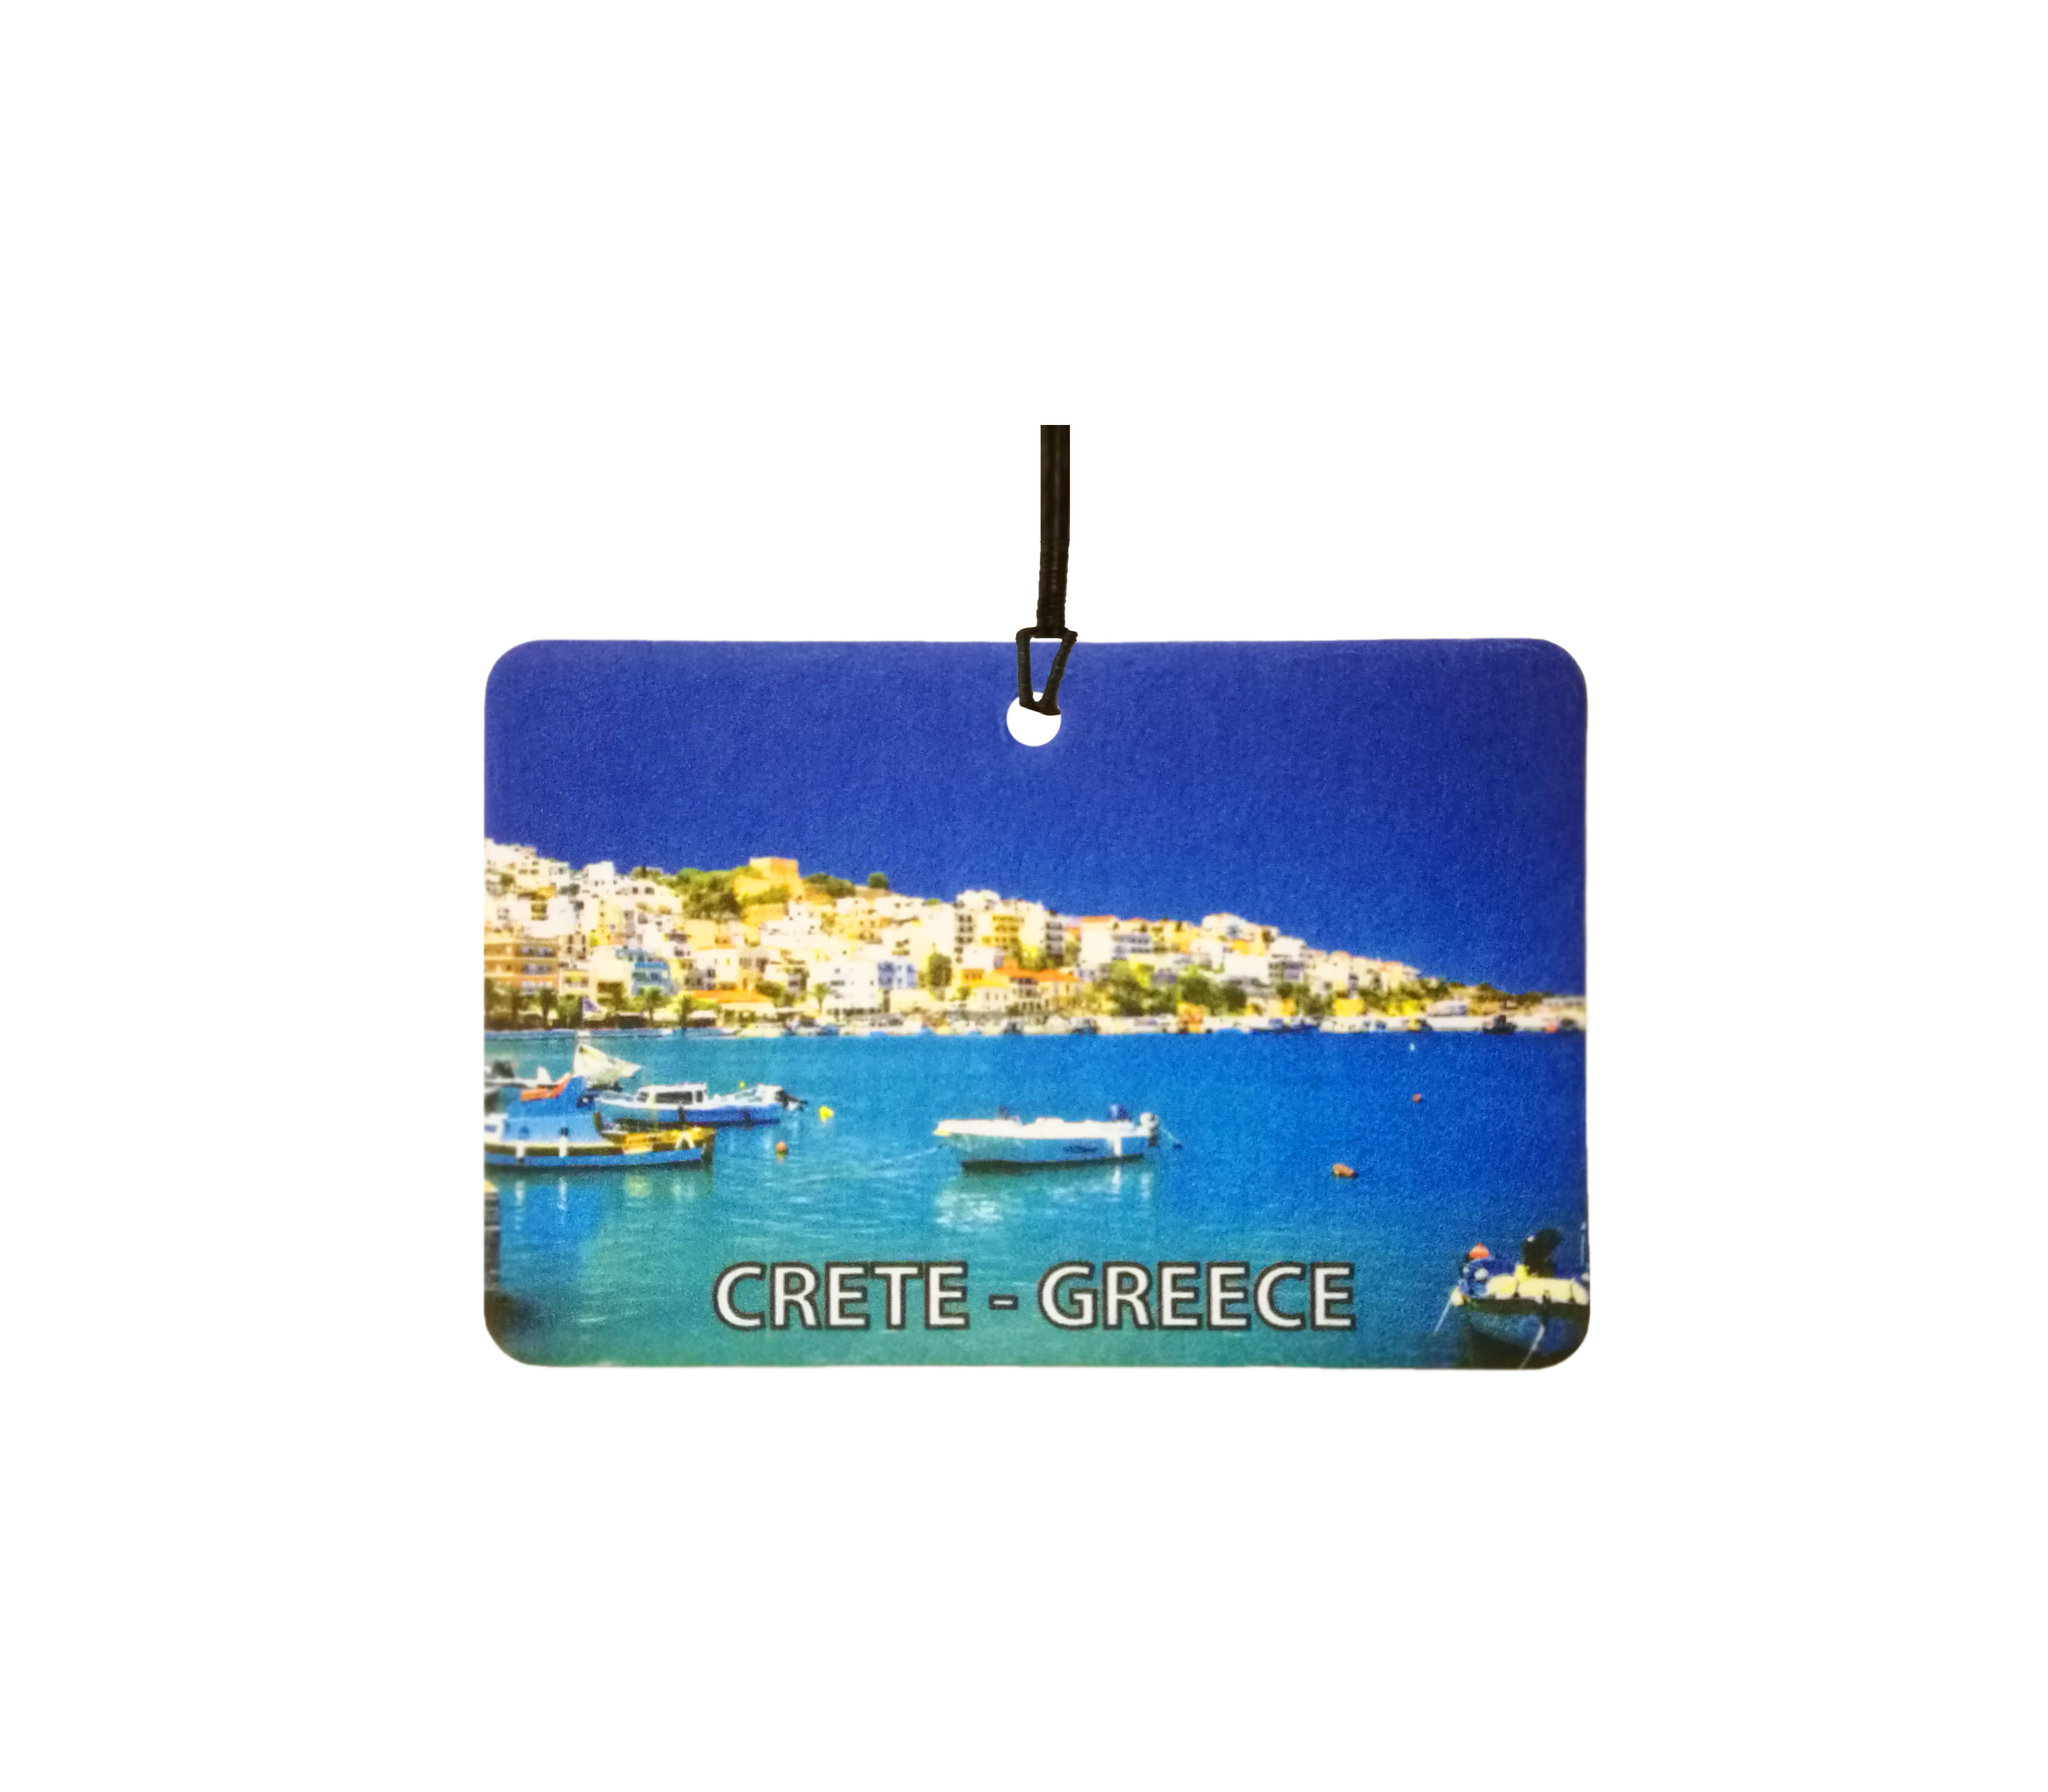 Crete - Greece